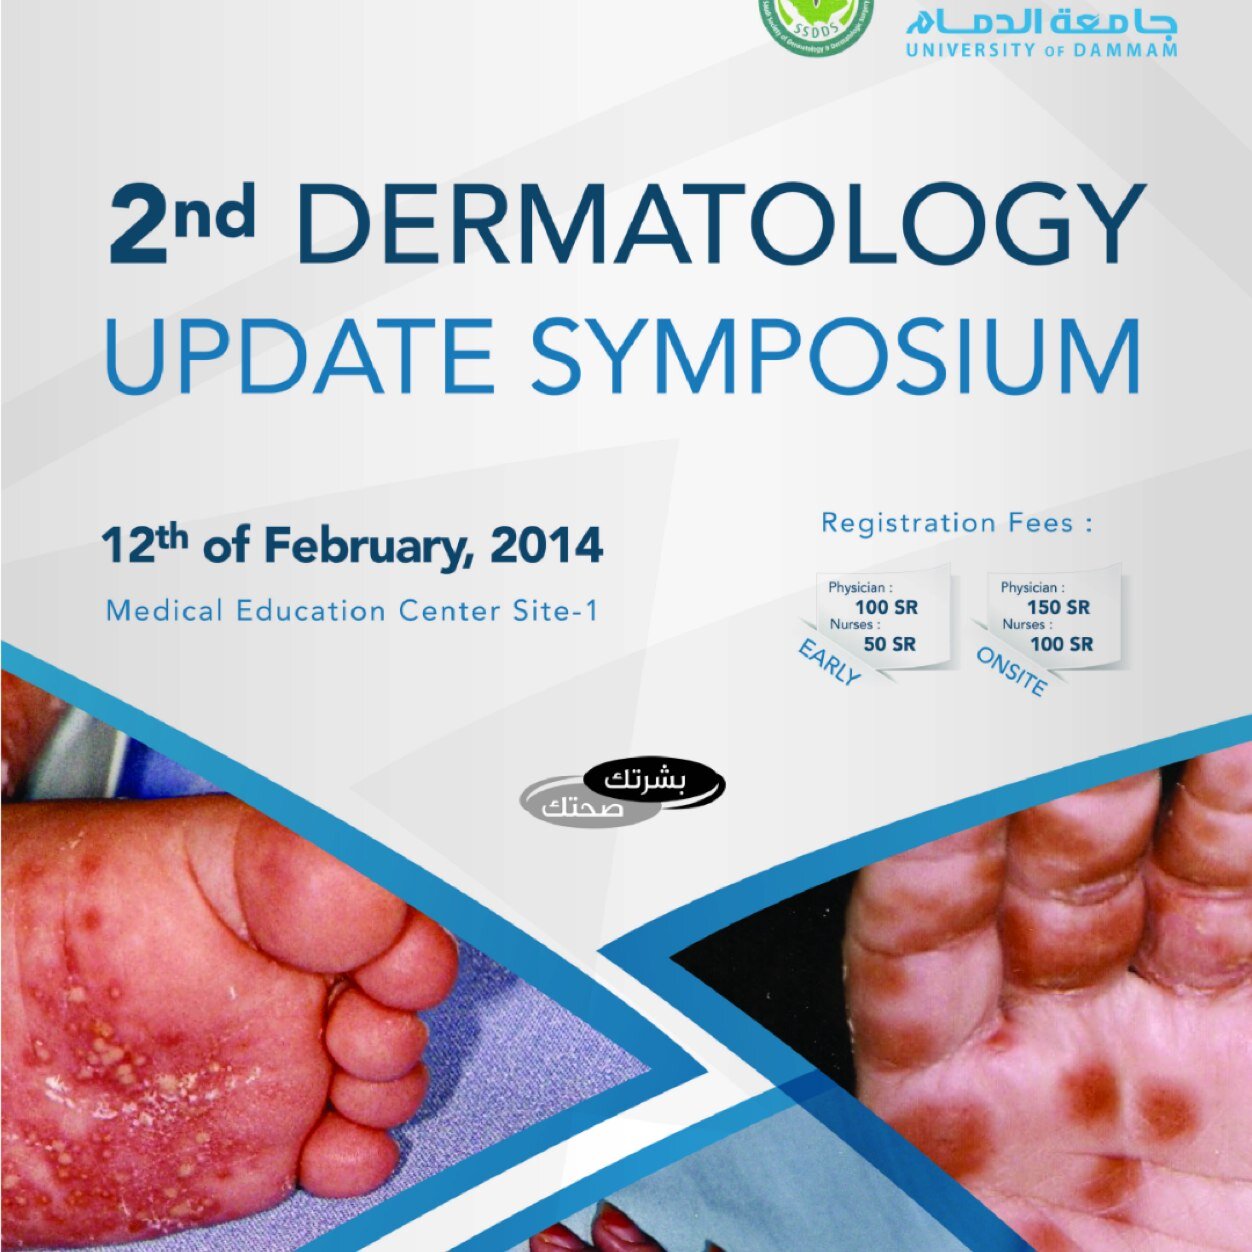 Email:uoddermatology@gmail.com. Instgram: iau.dermatology